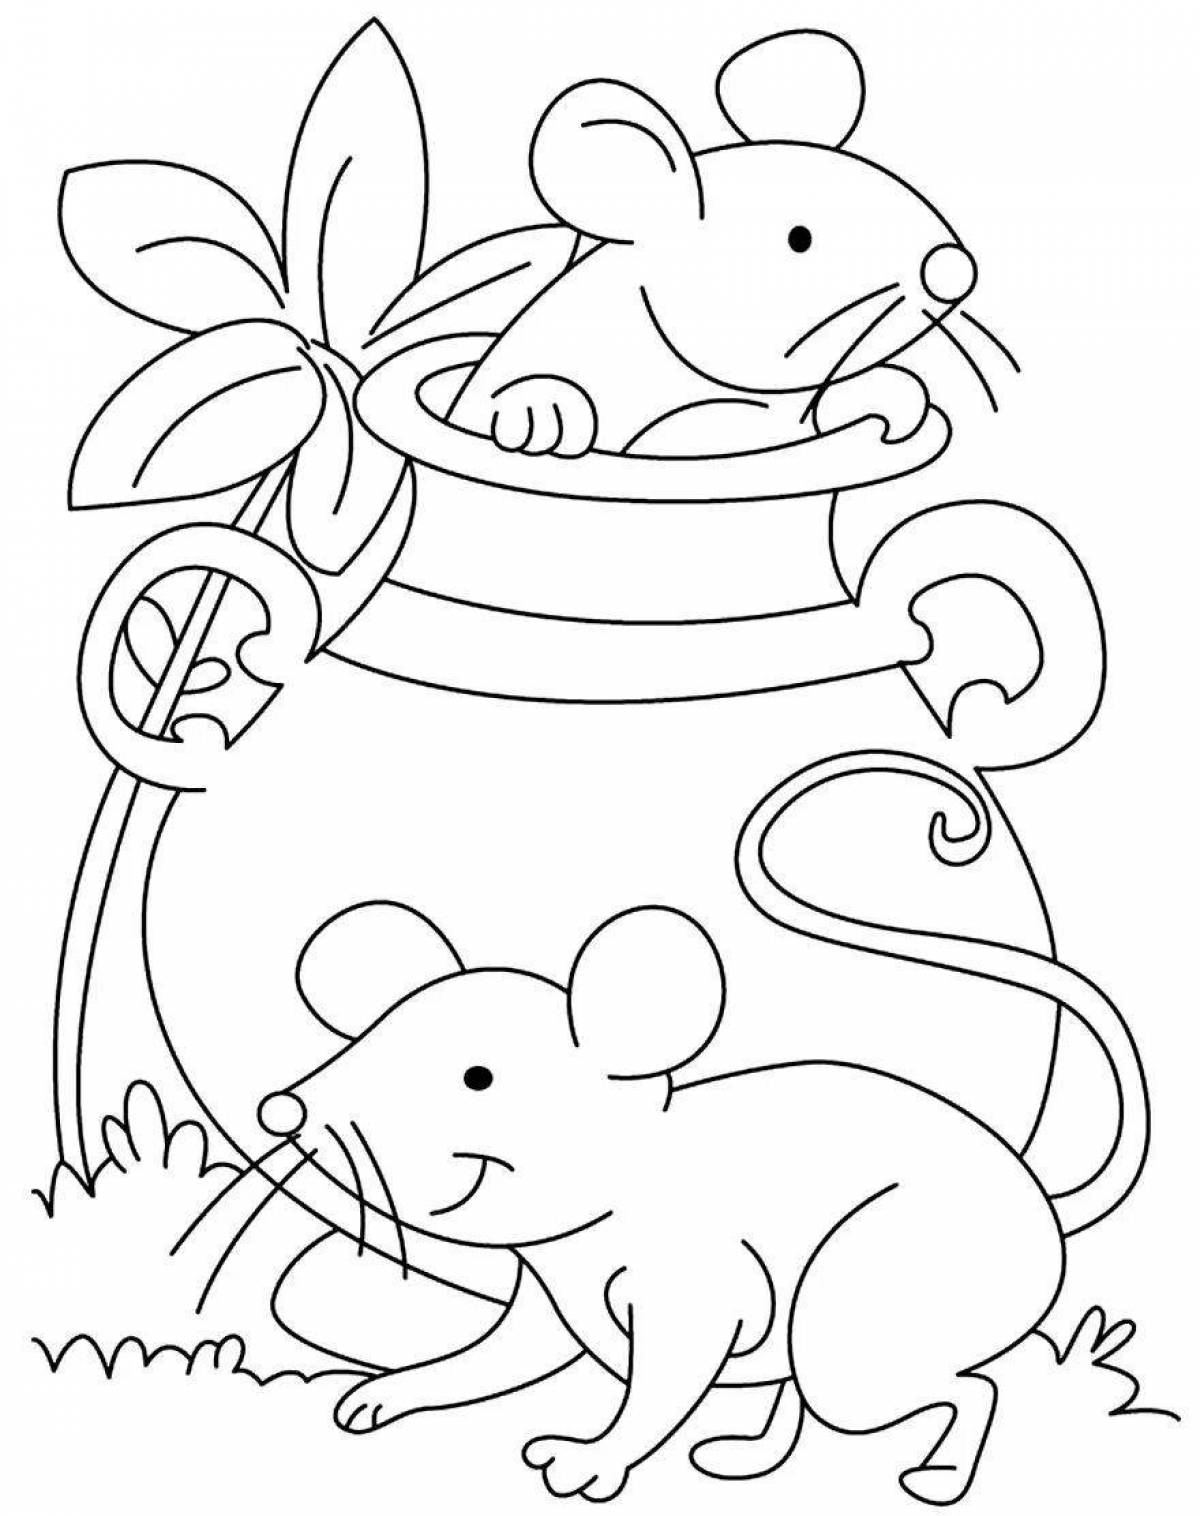 Красочная страница раскраски мыши для детей 4-5 лет